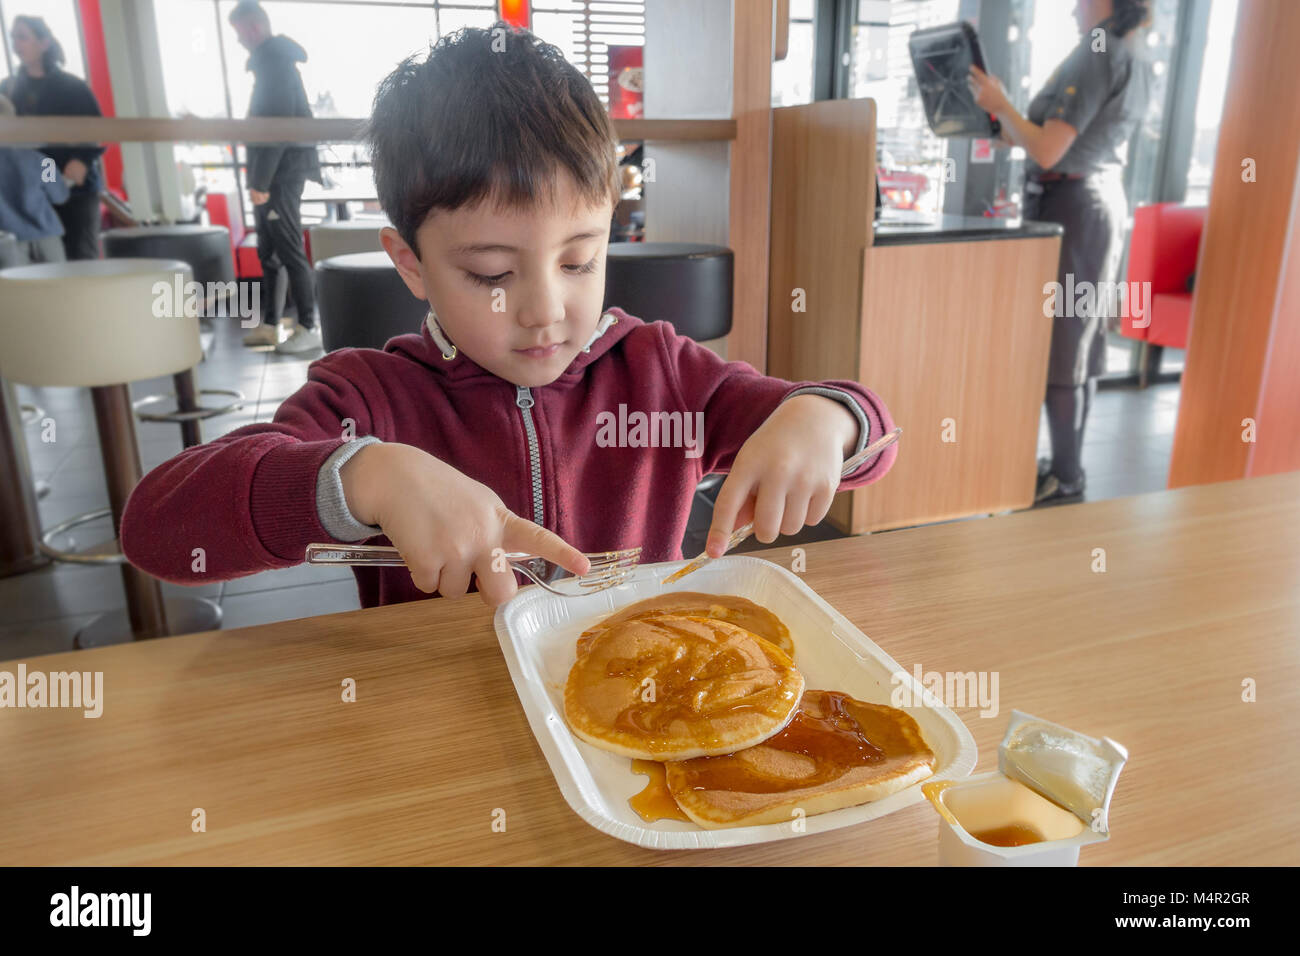 Come un regalo, un giovane bambino gode di pancake con sciroppo per fare colazione in un ristorante McDonalds. Foto Stock